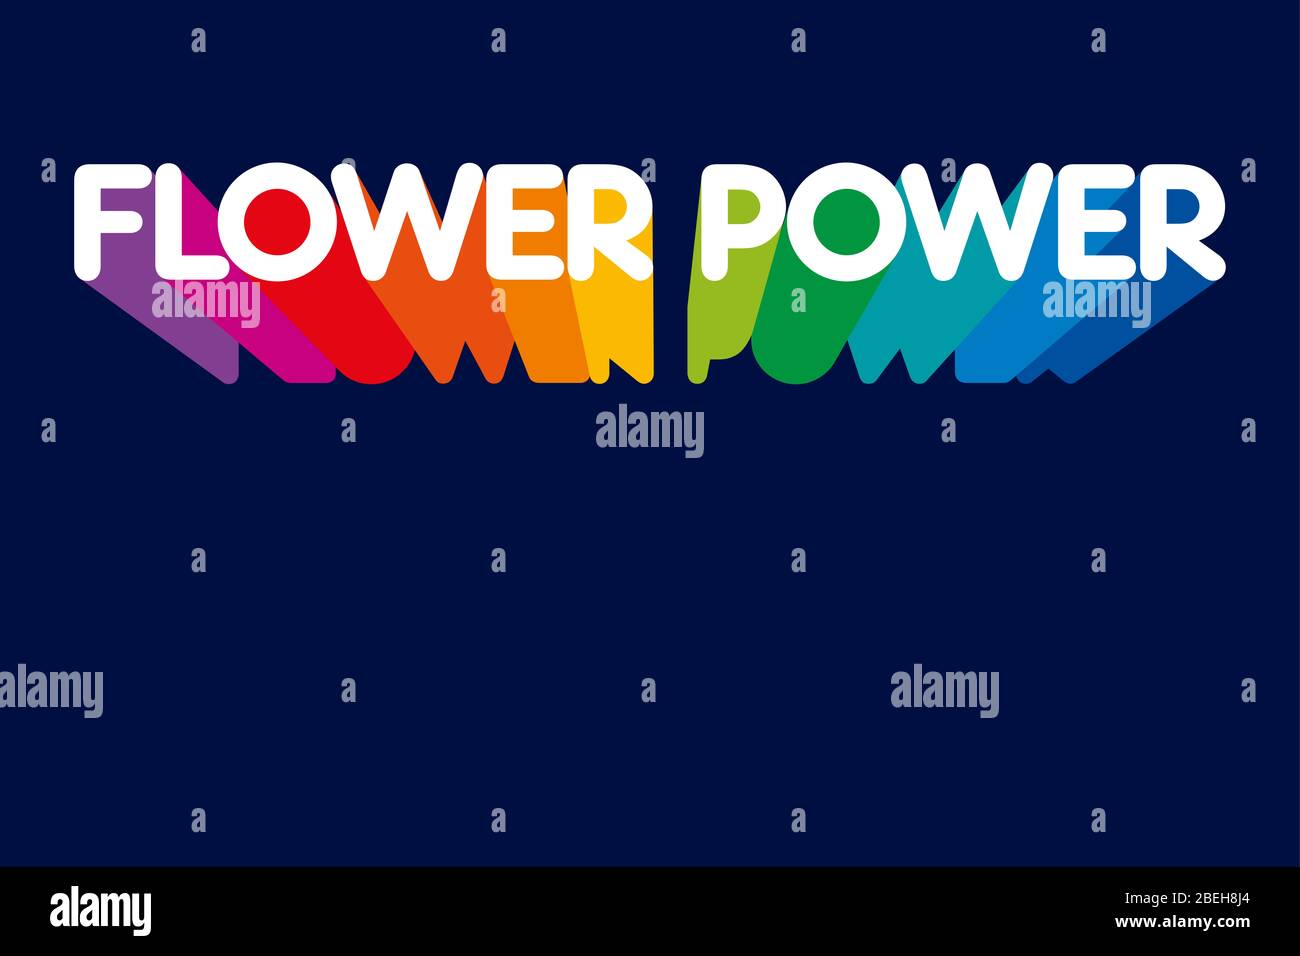 Flower Power Schriftzug mit nach unten zeigenden Schatten in Regenbogenfarben. Slogan, der in den 60er und 70er Jahren als Symbol des passiven Widerstands verwendet wurde. Stockfoto